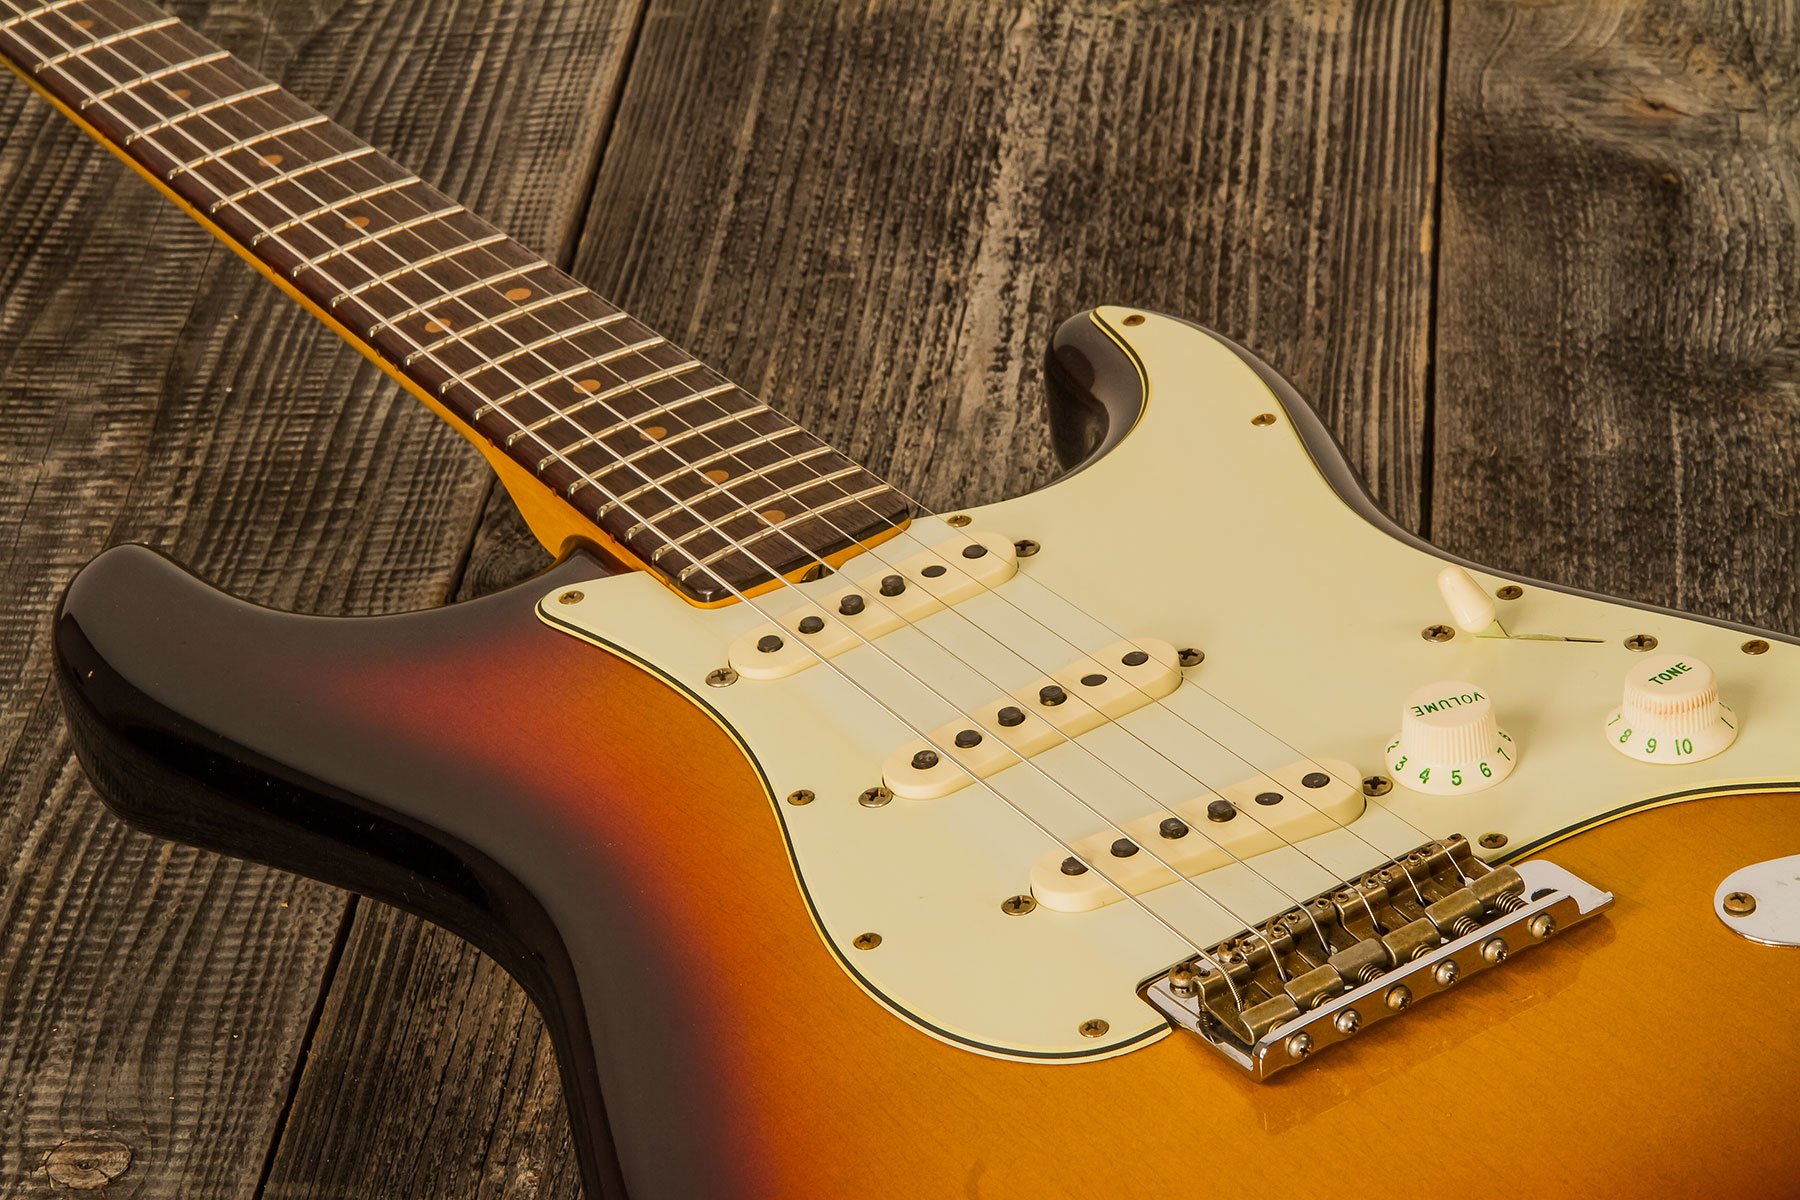 Fender Custom Shop Strat 1964 3s Trem Rw - Journeyman Relic Target 3-color Sunburst - Str shape electric guitar - Variation 3